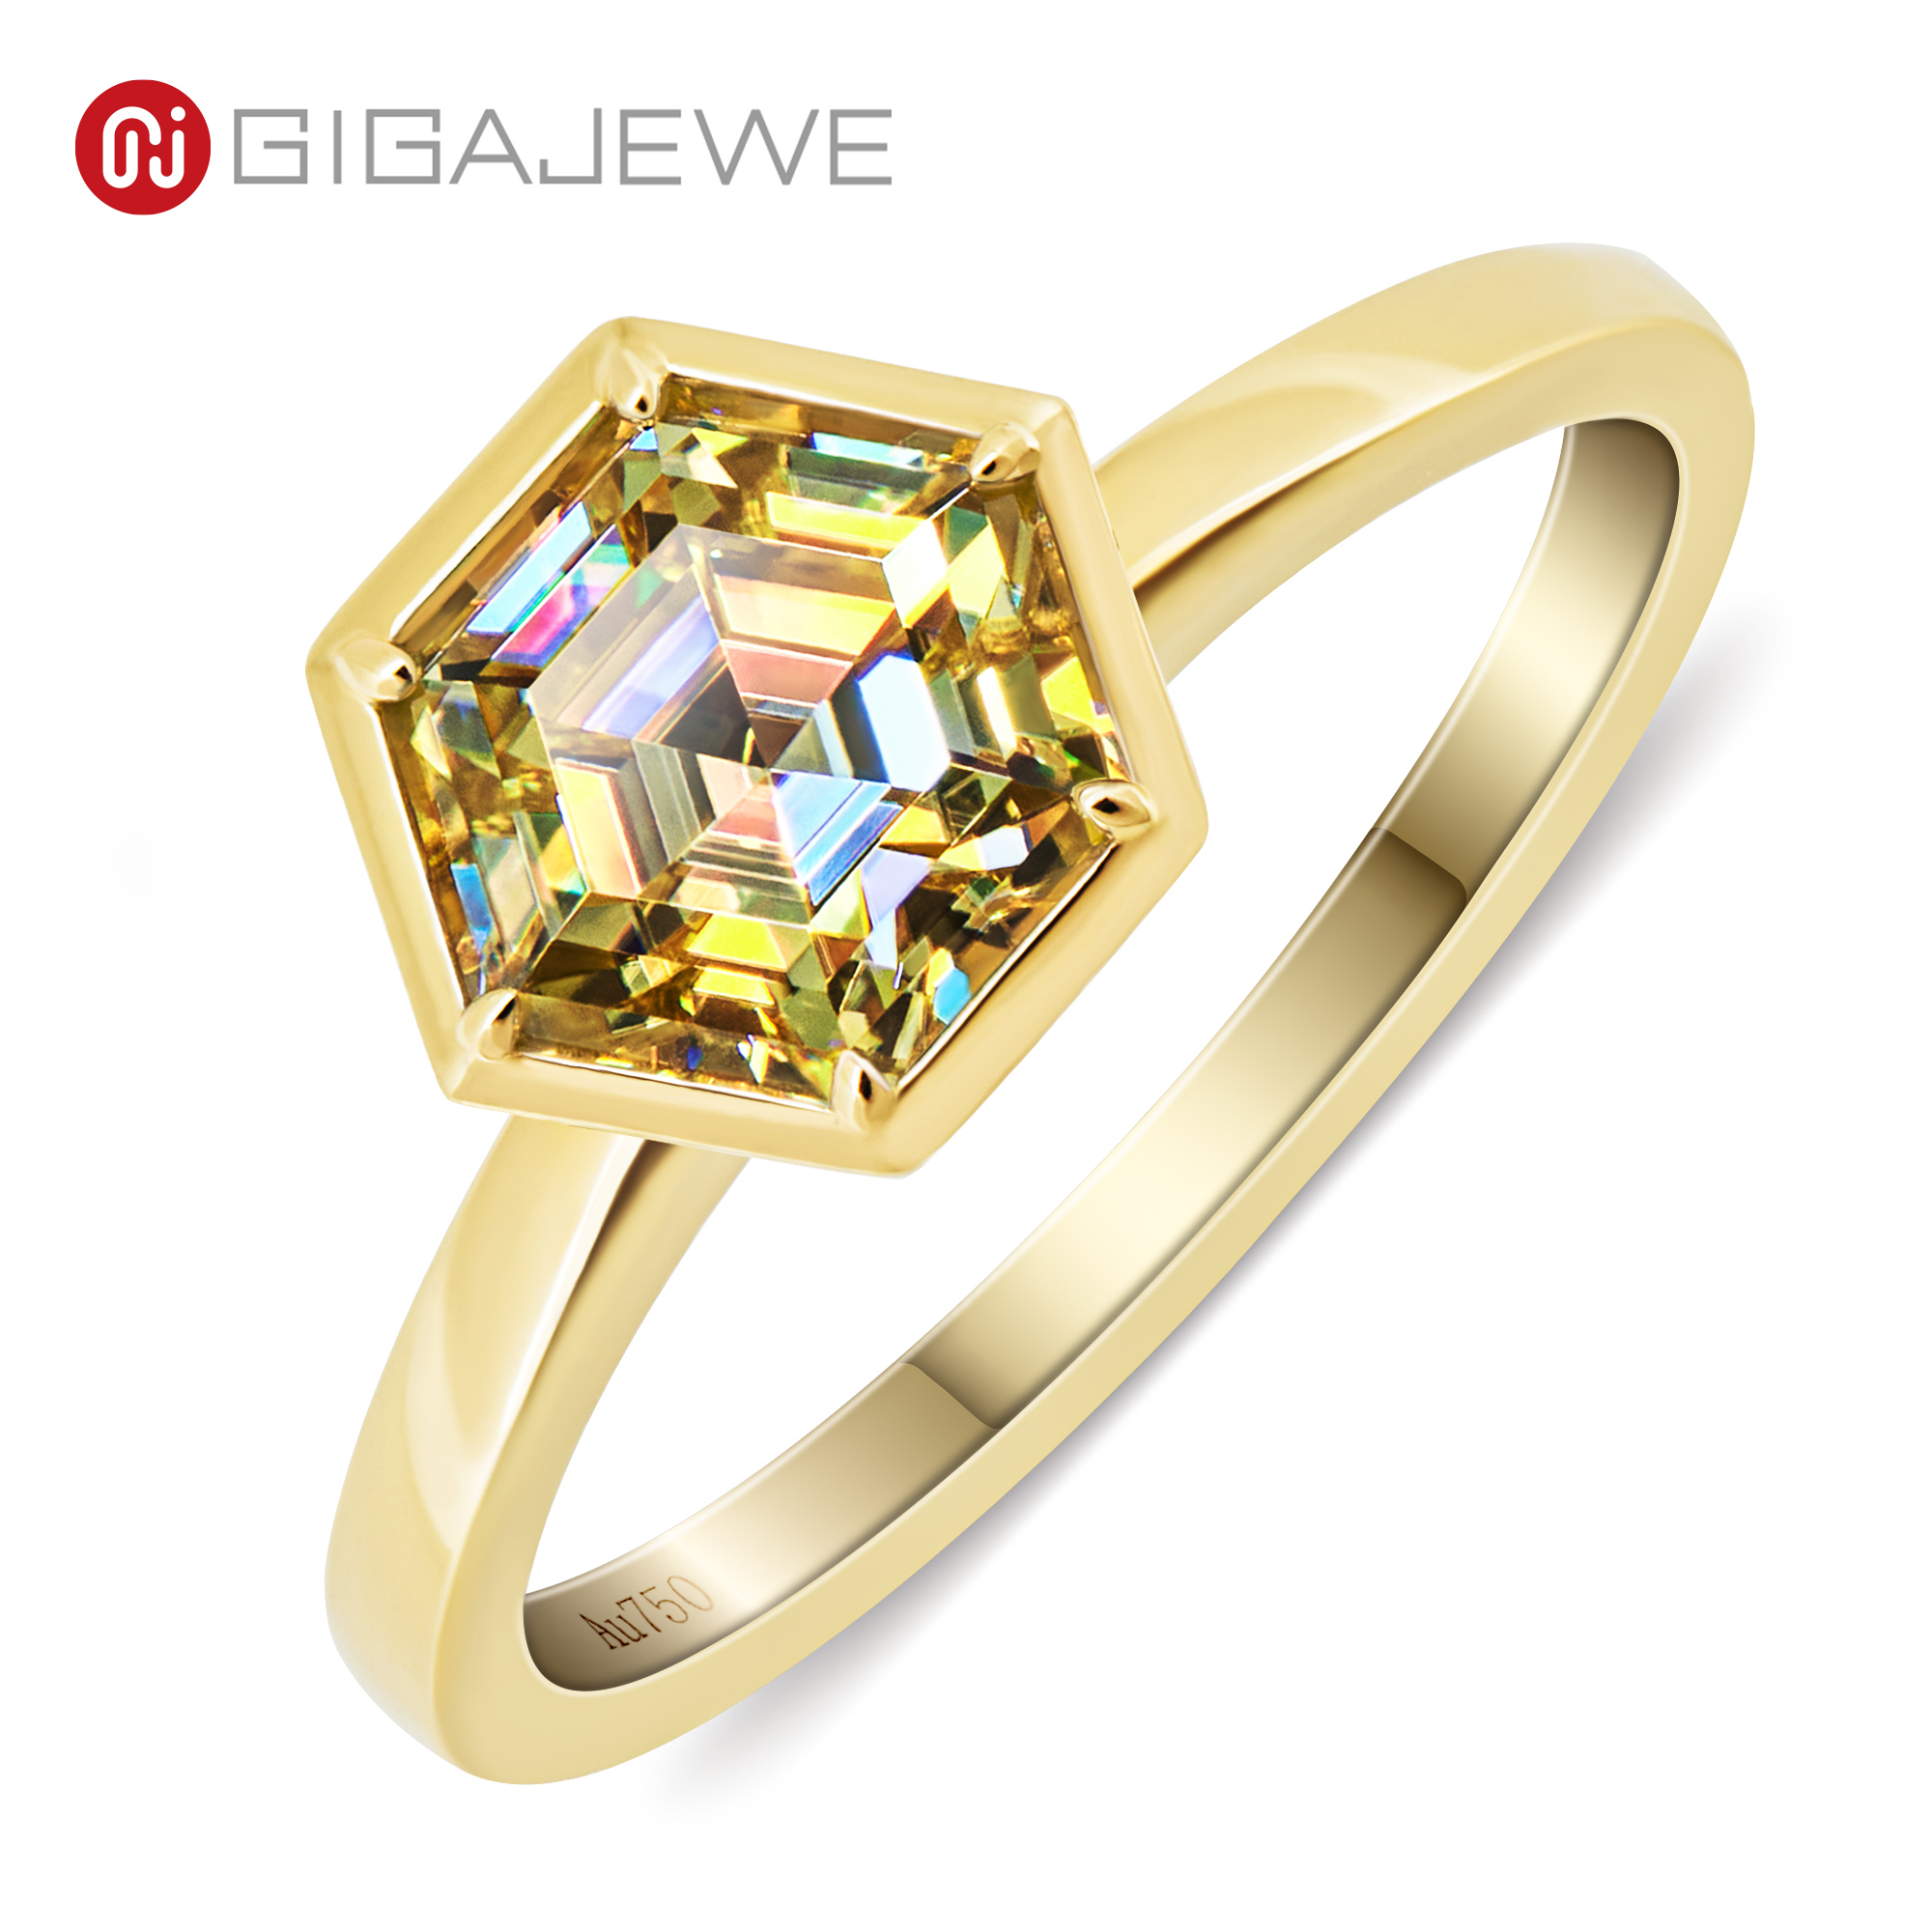 GIGAJEWE 莫桑钻戒指 1.0ct 6.0mm 六角形切割 鲜艳黄色 蓝色 绿色 粉色 18K 黄金戒指 首饰 女朋友礼物